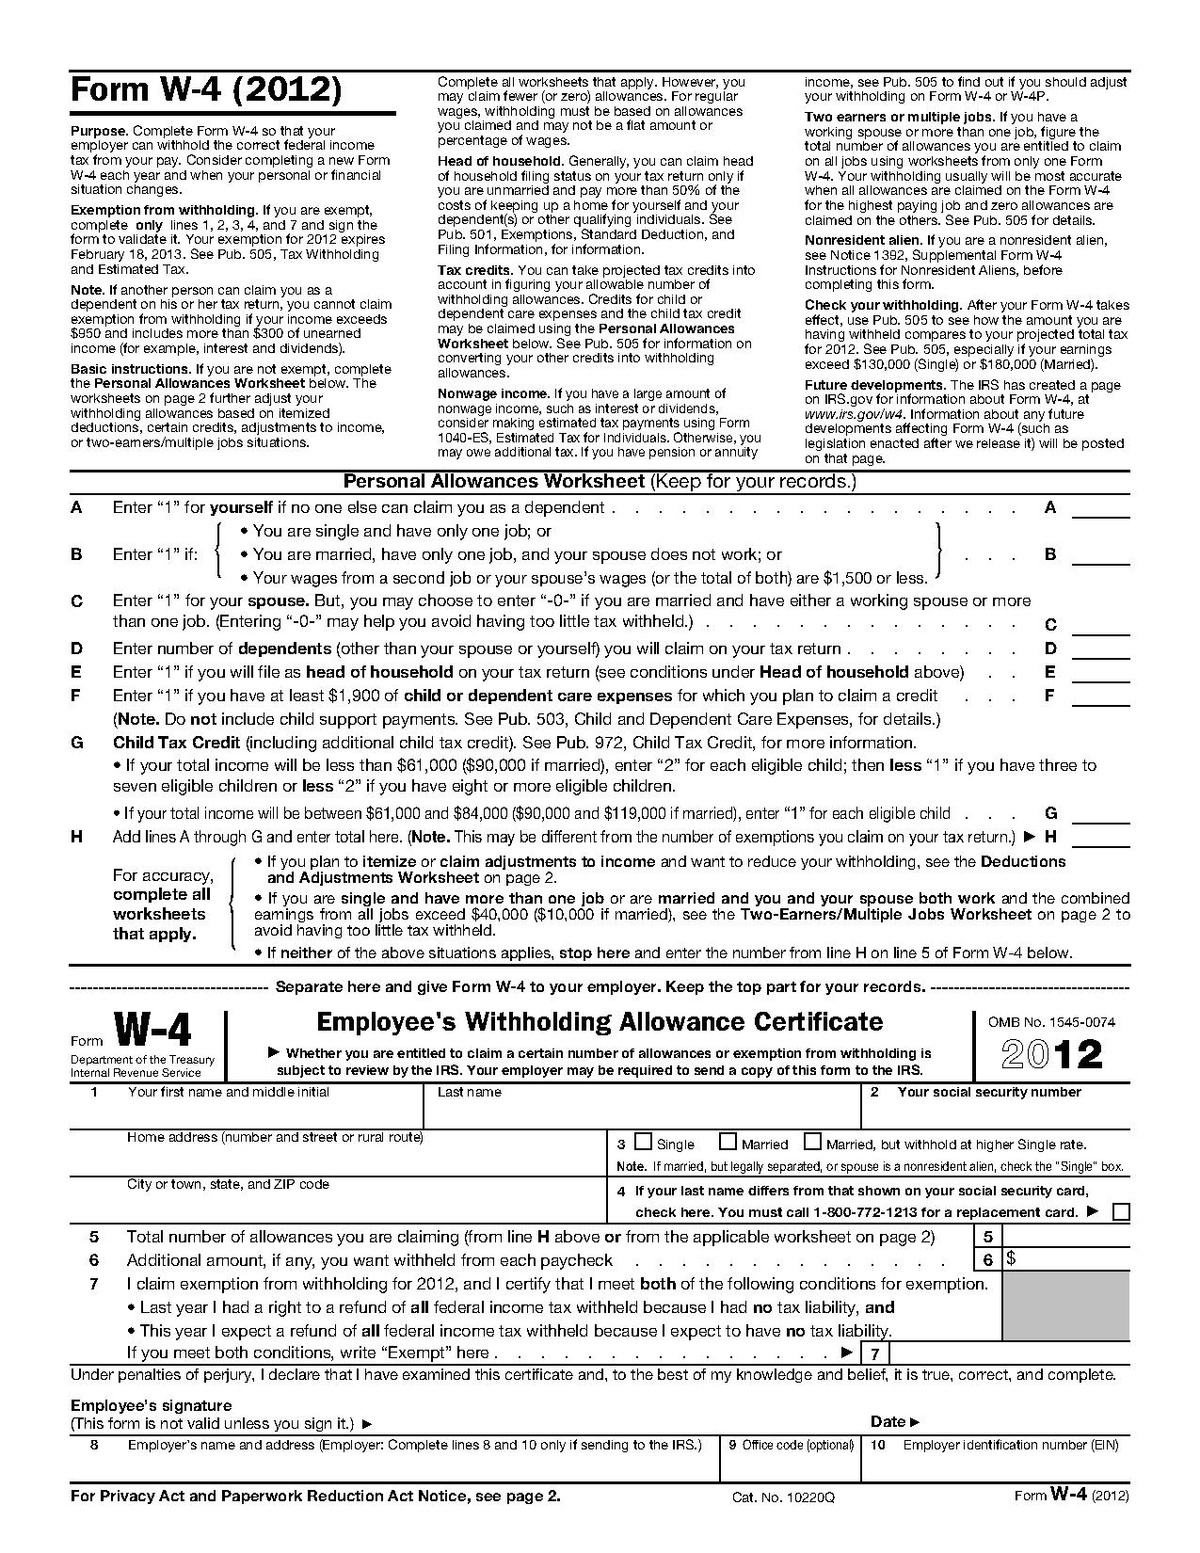 Form W-4 - Wikipedia inside Form W 4 2013 Free Printable